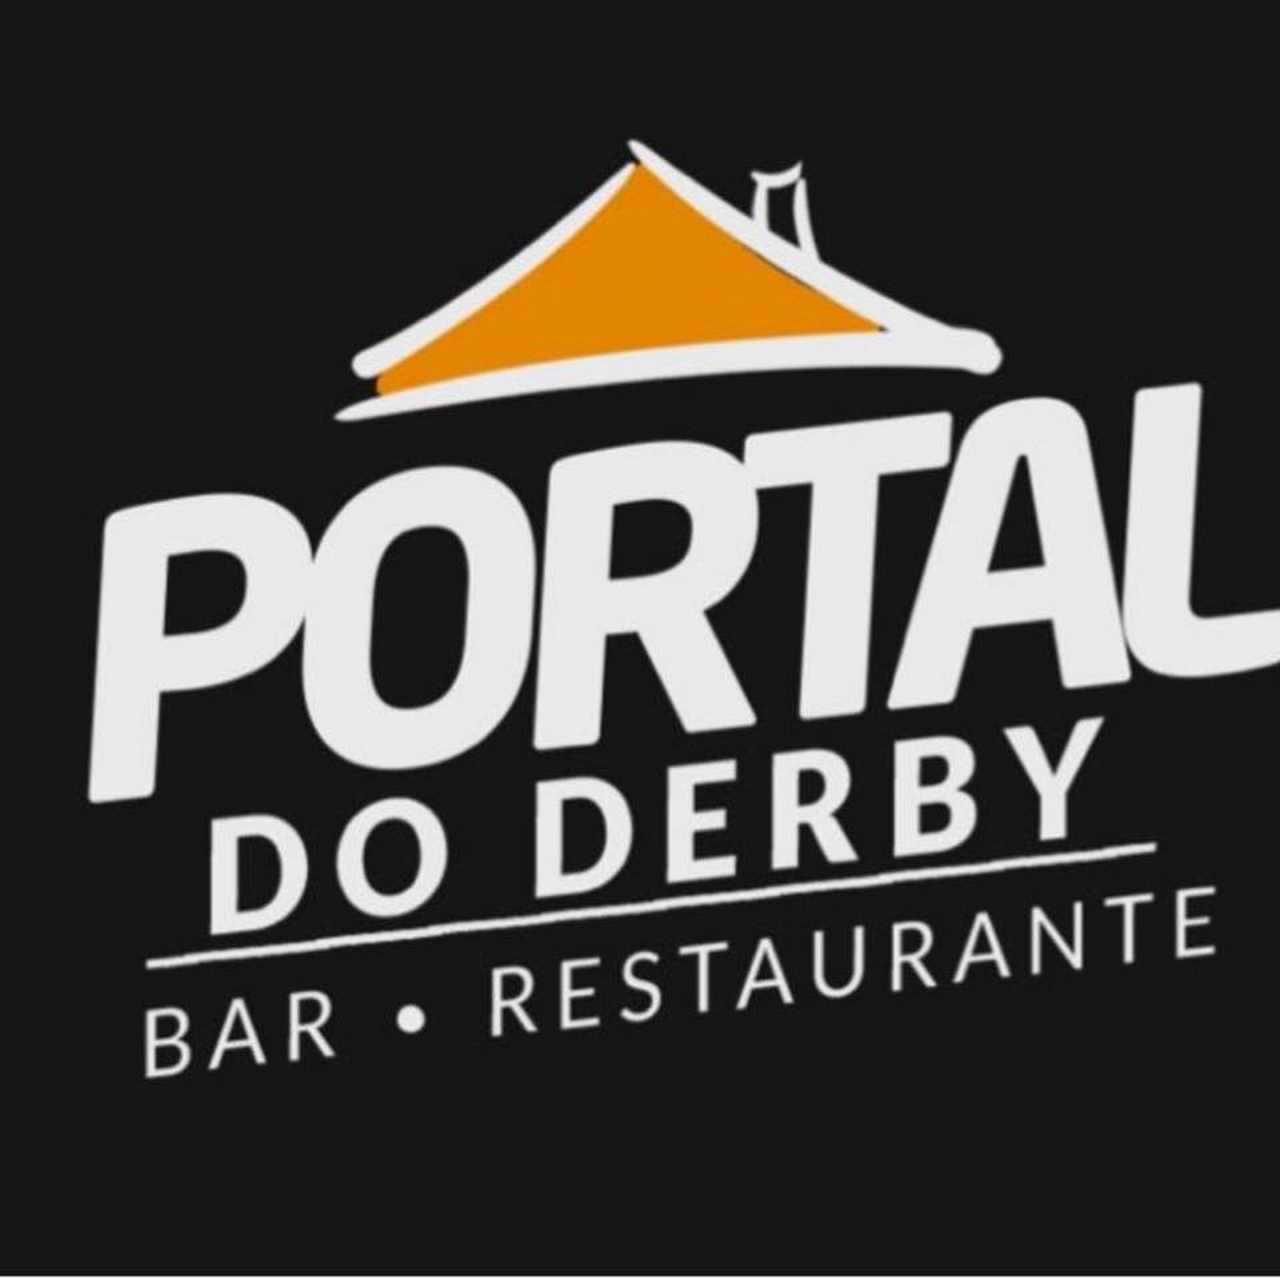 Portal_do_derby_easy-resize.com